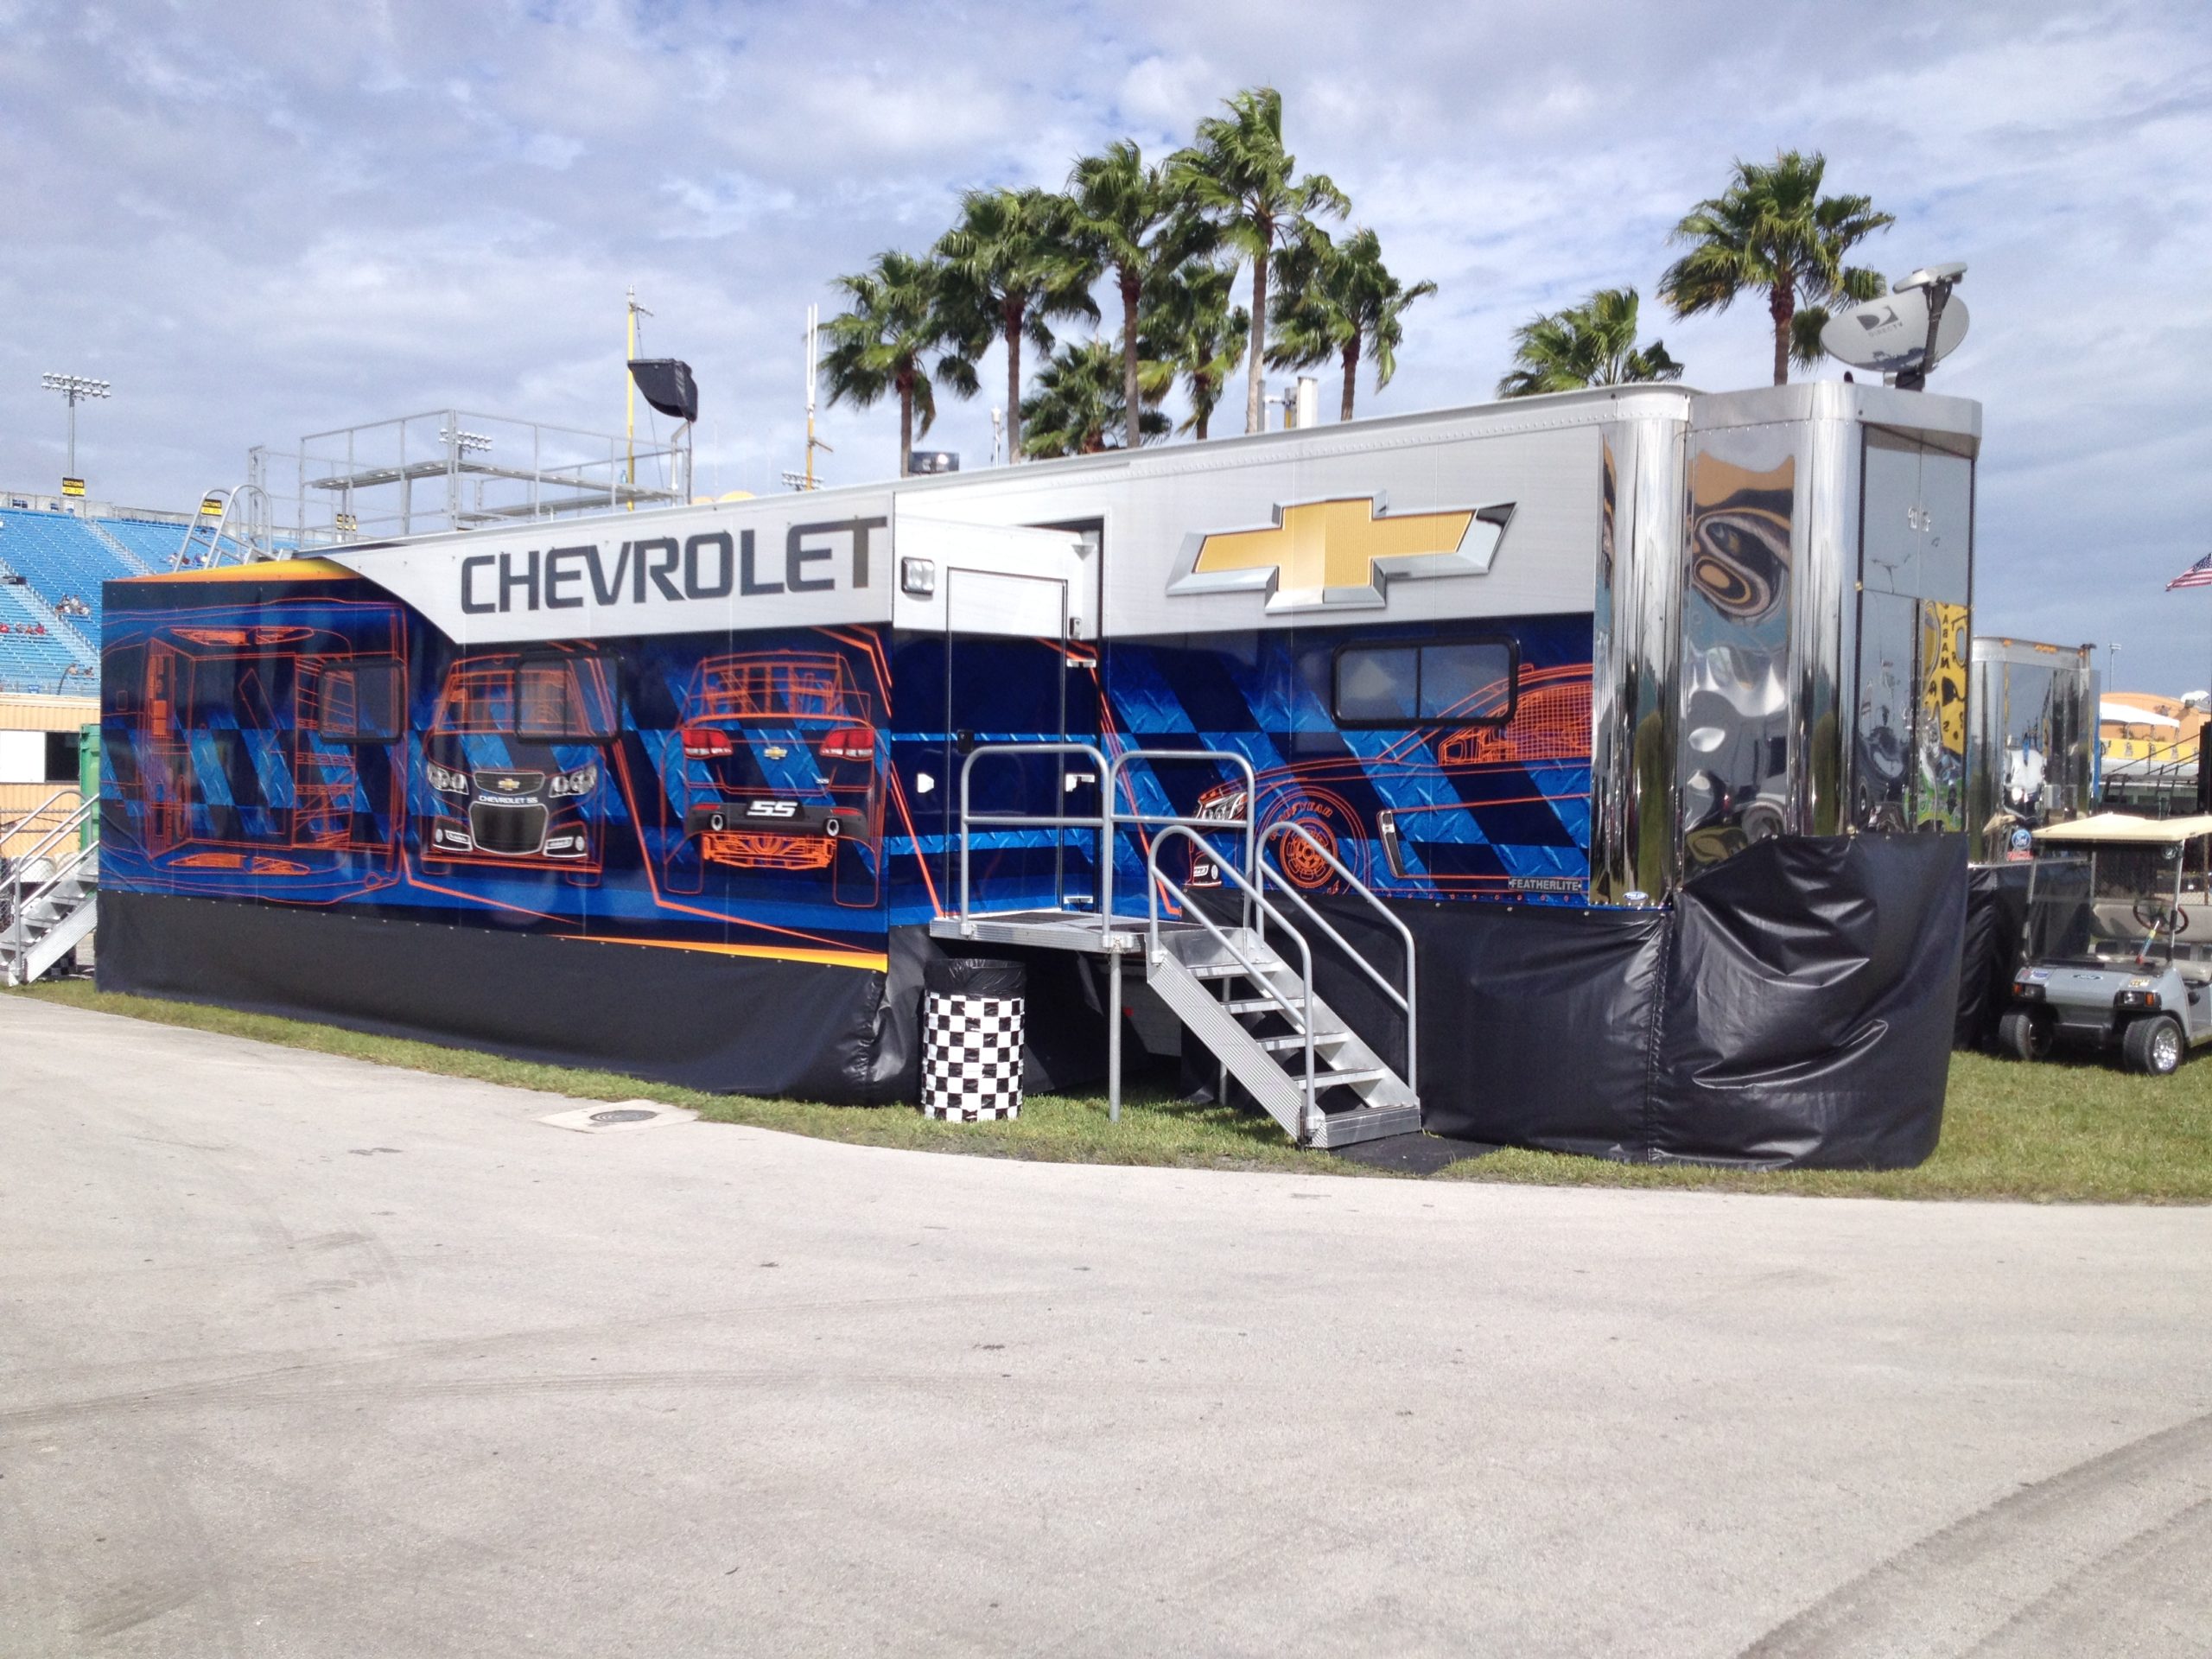 Chevrolet mobile office trailer